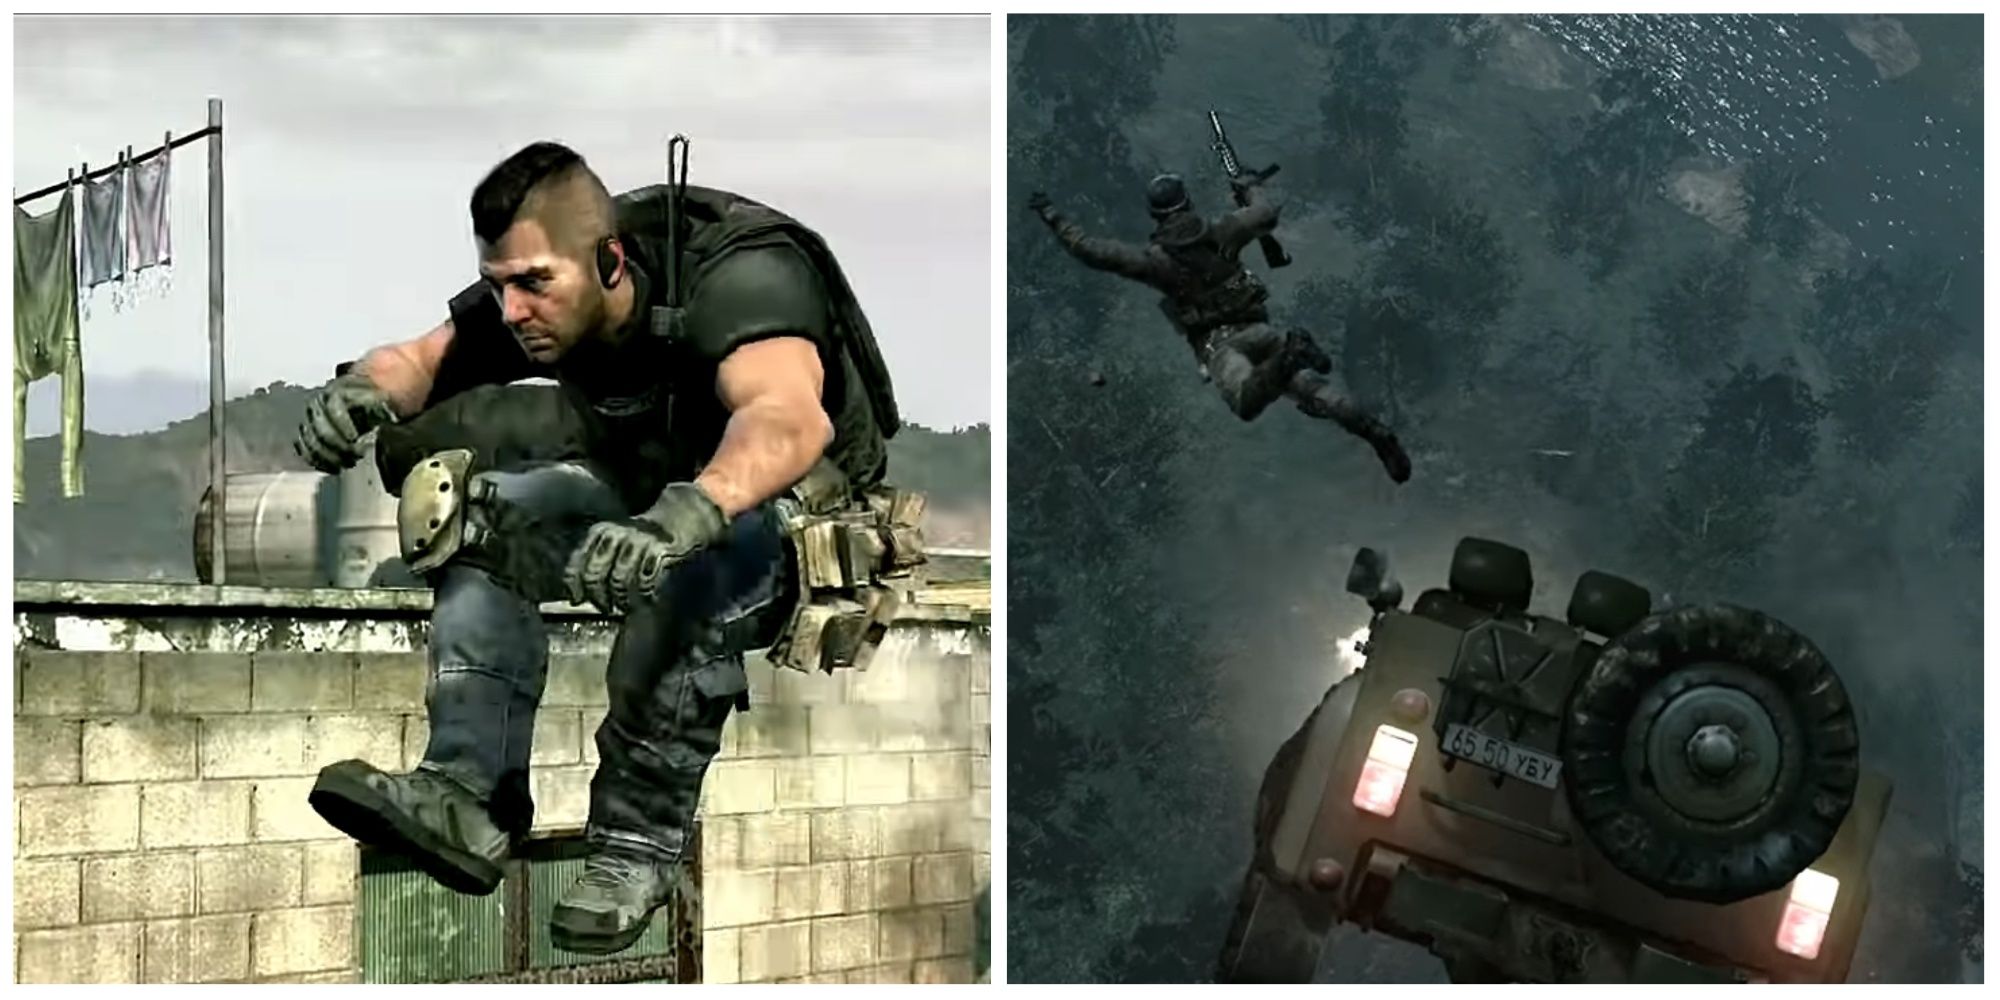 Soap jumping a gap in Modern Warfare 2 and Yuri jumping from a vehicle in Modern Warfare 3.